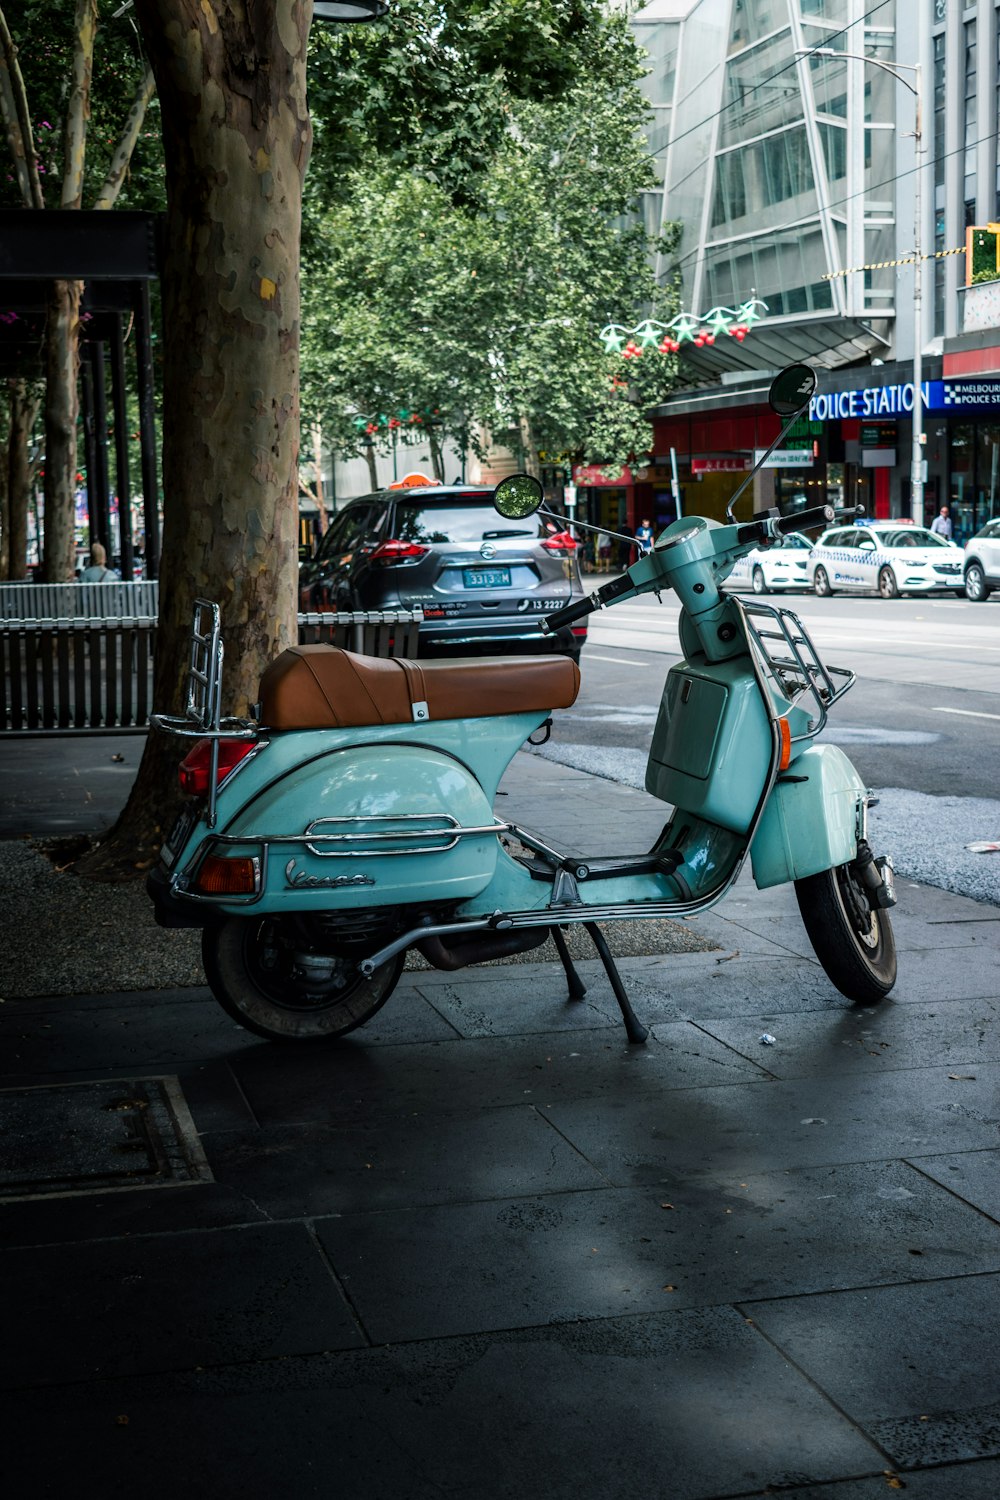 Stationnement de scooters verts près de la route pendant la journée